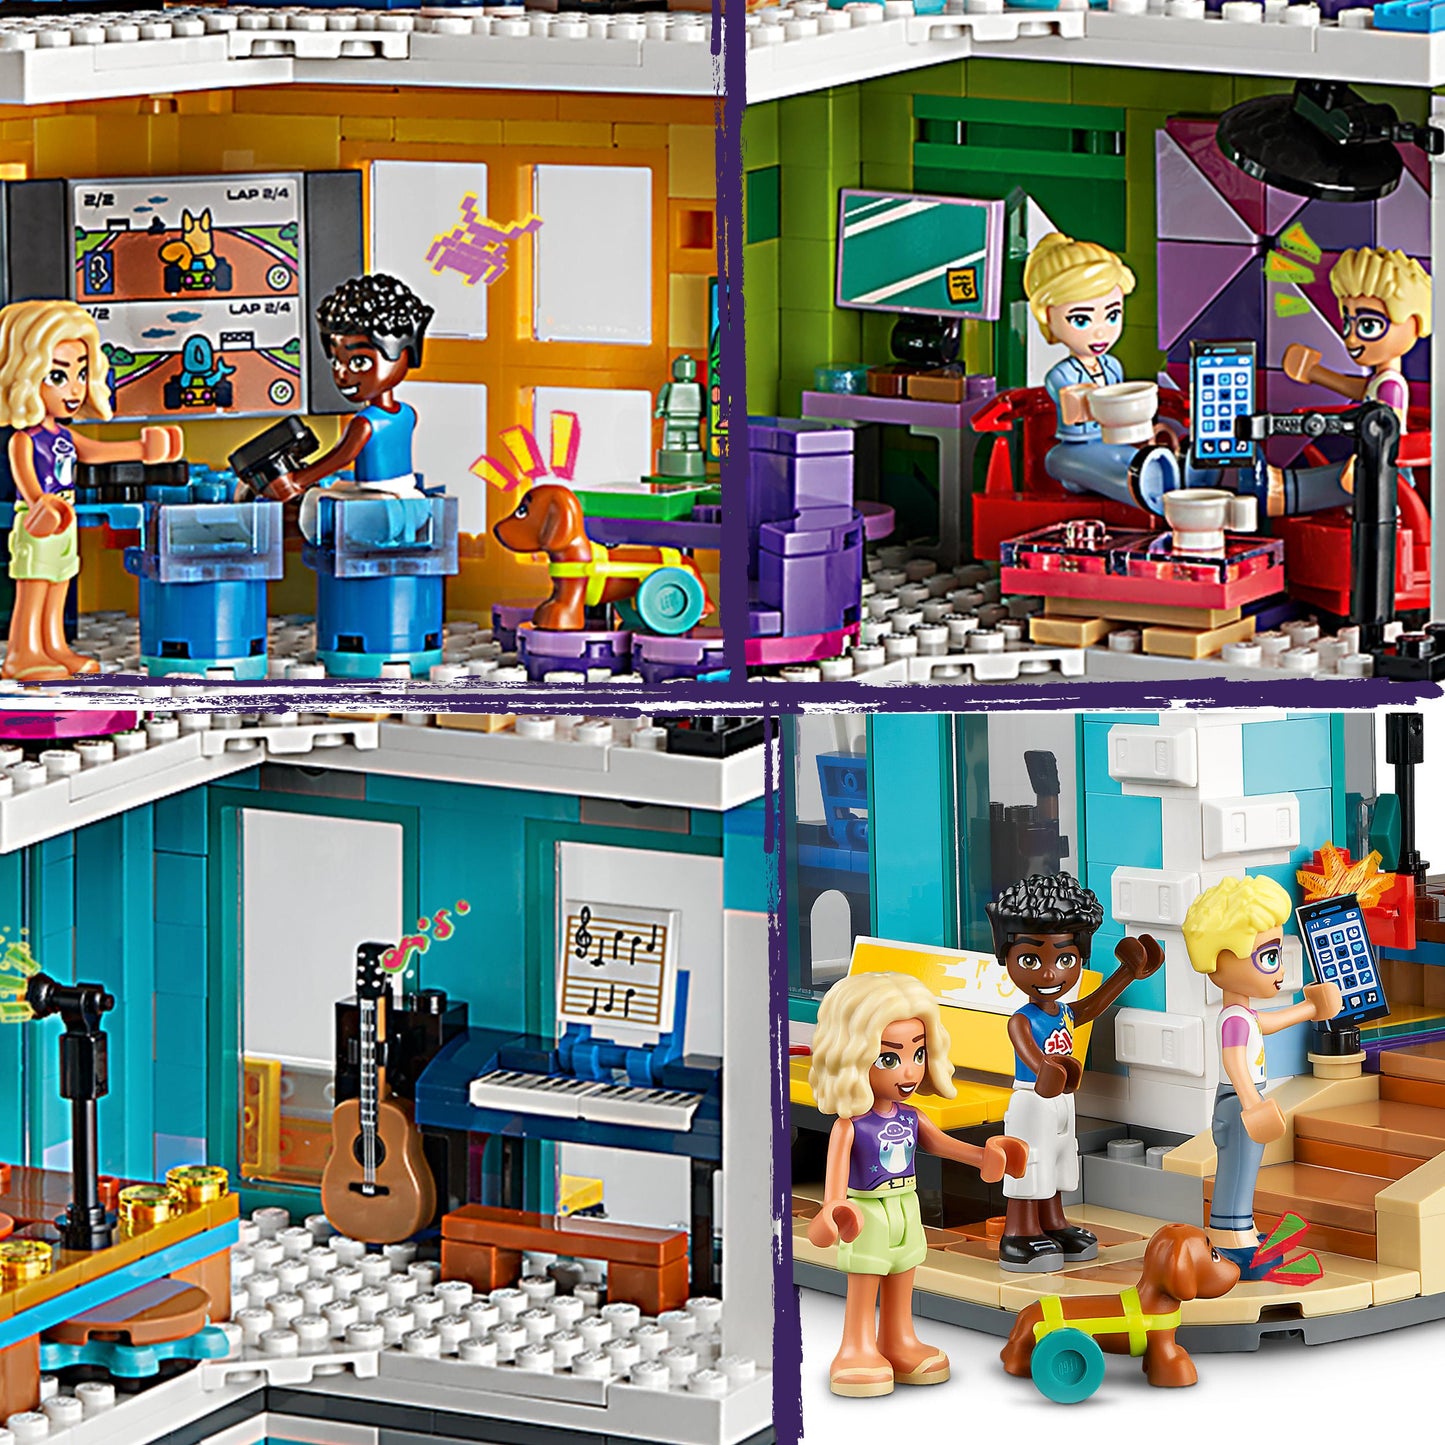 41748 LEGO Friends - Centro comunitario di Heartlake City